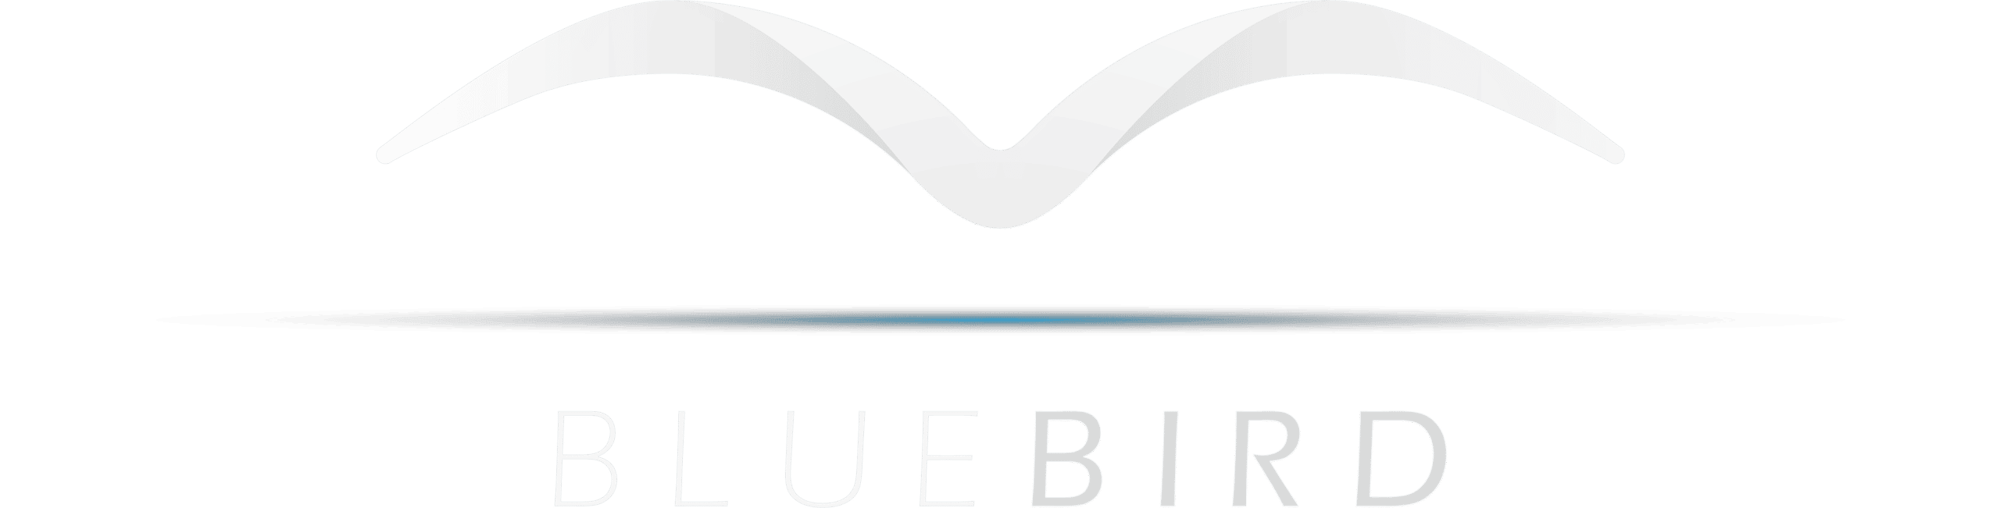 The bluebird logo.